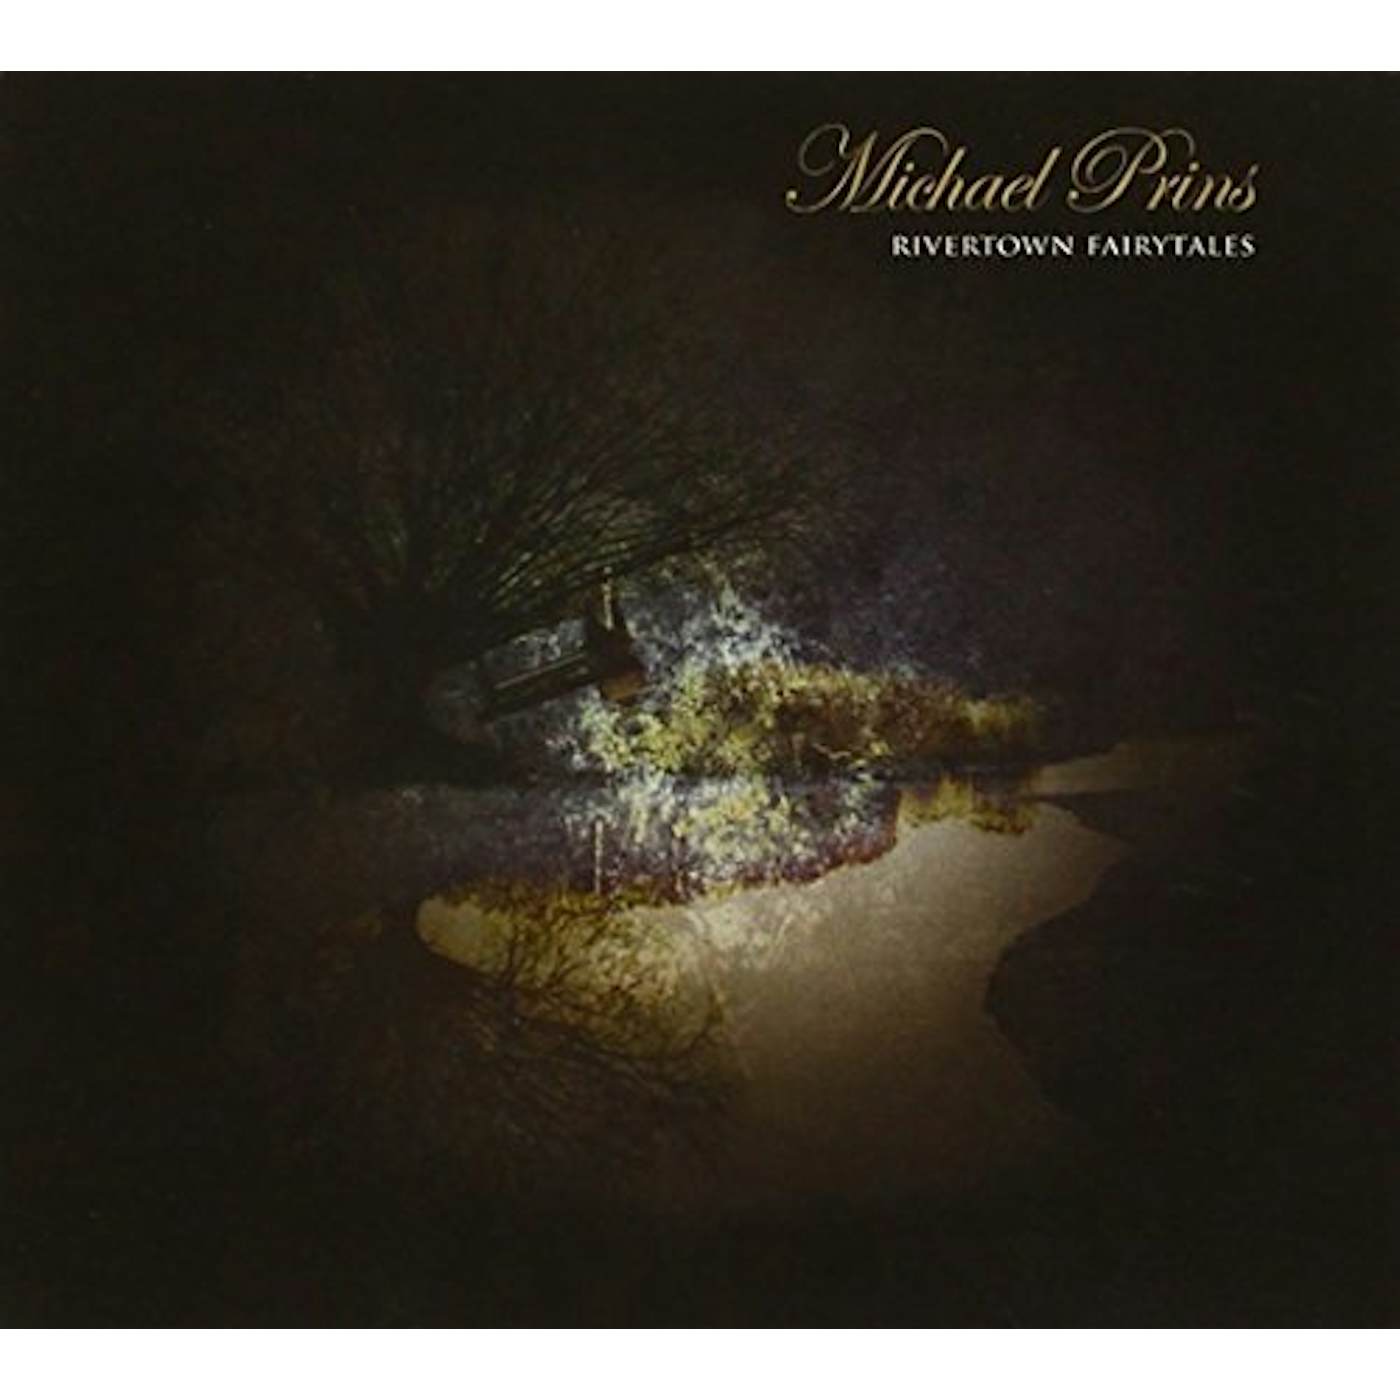 Michael Prins RIVERTOWN FAIRYTALES CD